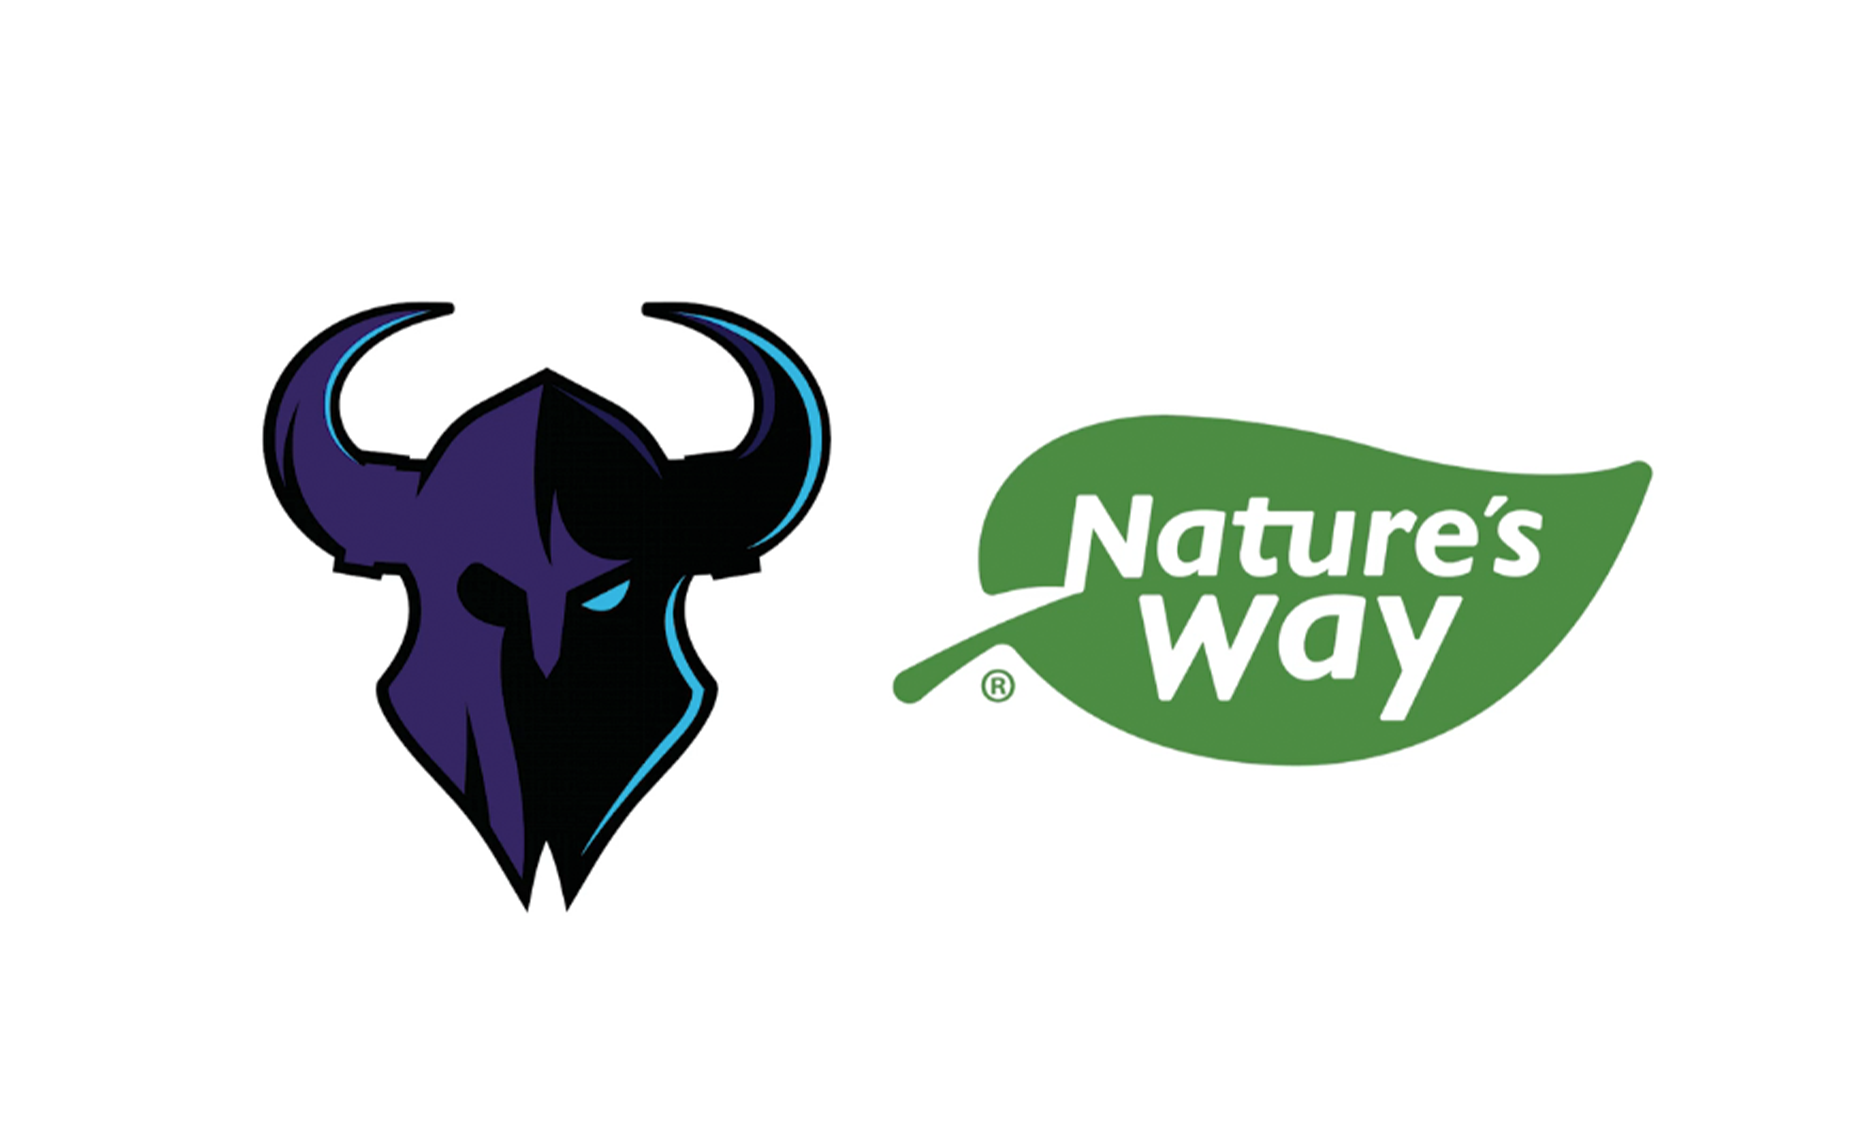 Minnesota Rokkr announces Natureu2019s Way partnership